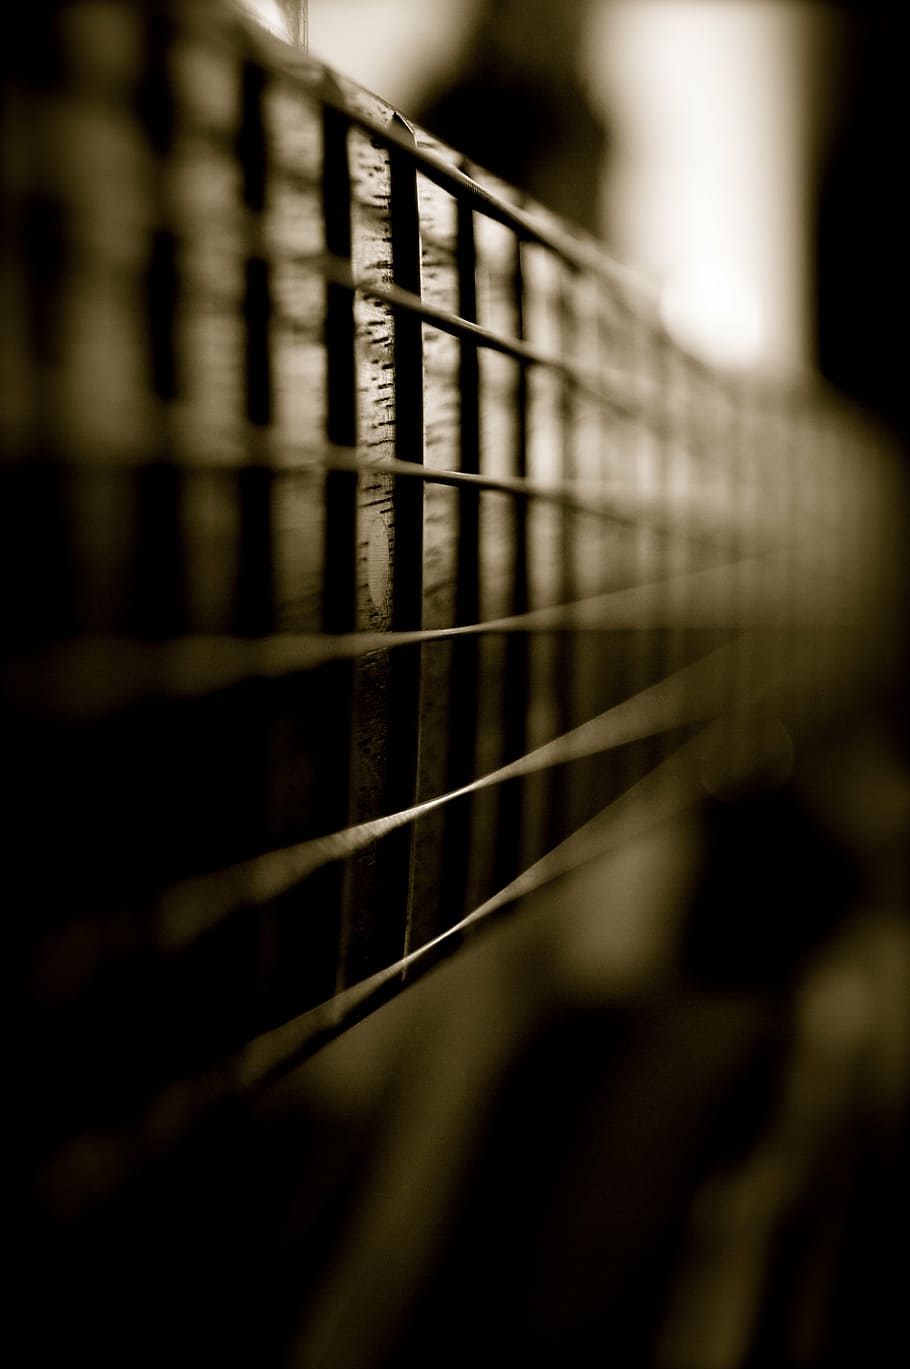 fotografia de close-up, 6 cordas, guitarra de 6 cordas, violão, instrumento, cordas, som, música, preto, branco